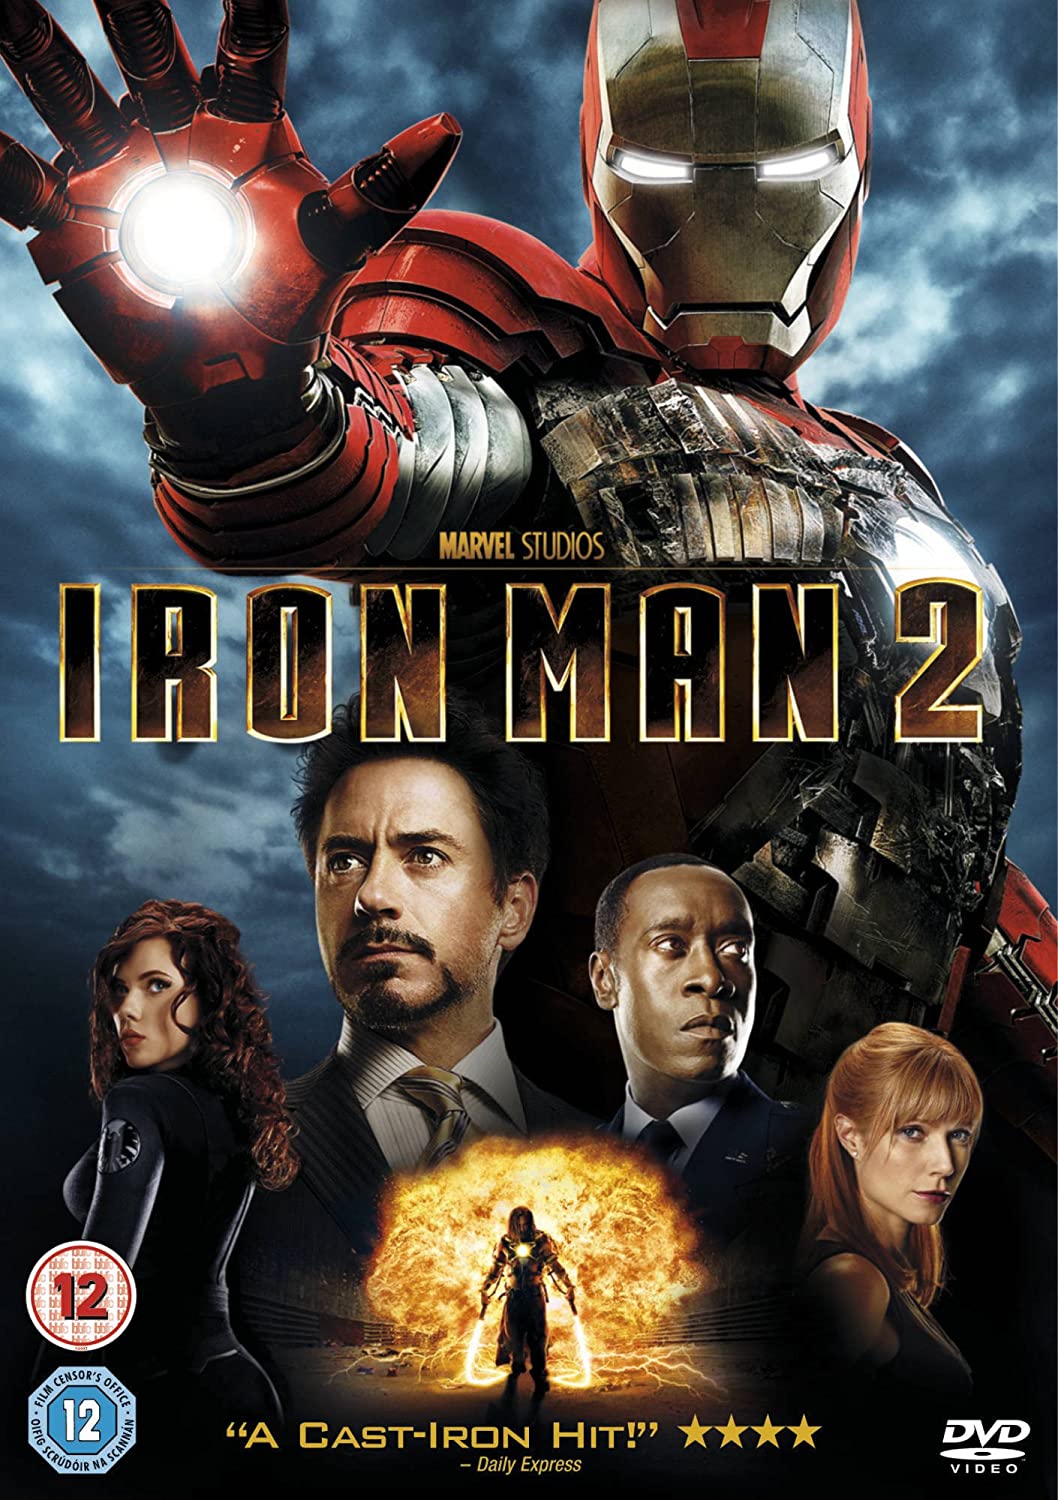 Iron Man 2 - Action/Adventure [DVD]